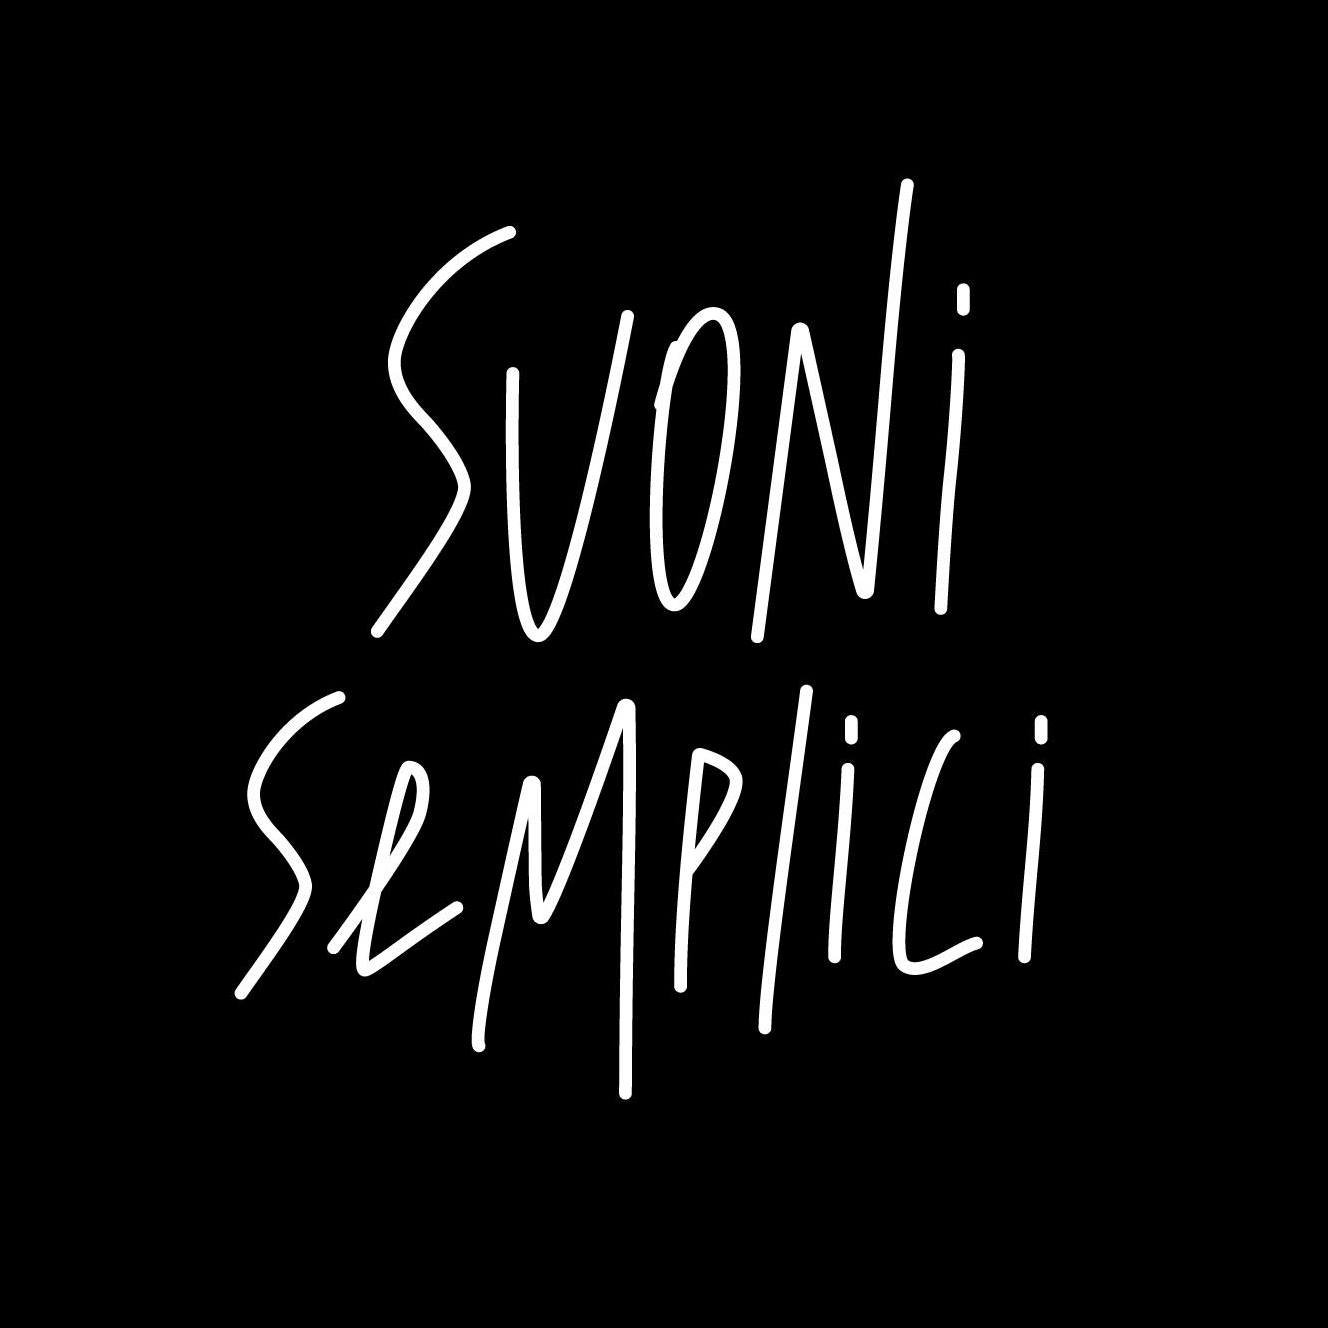 Suoni Semplici.
Musica fatta a mano in Italia.